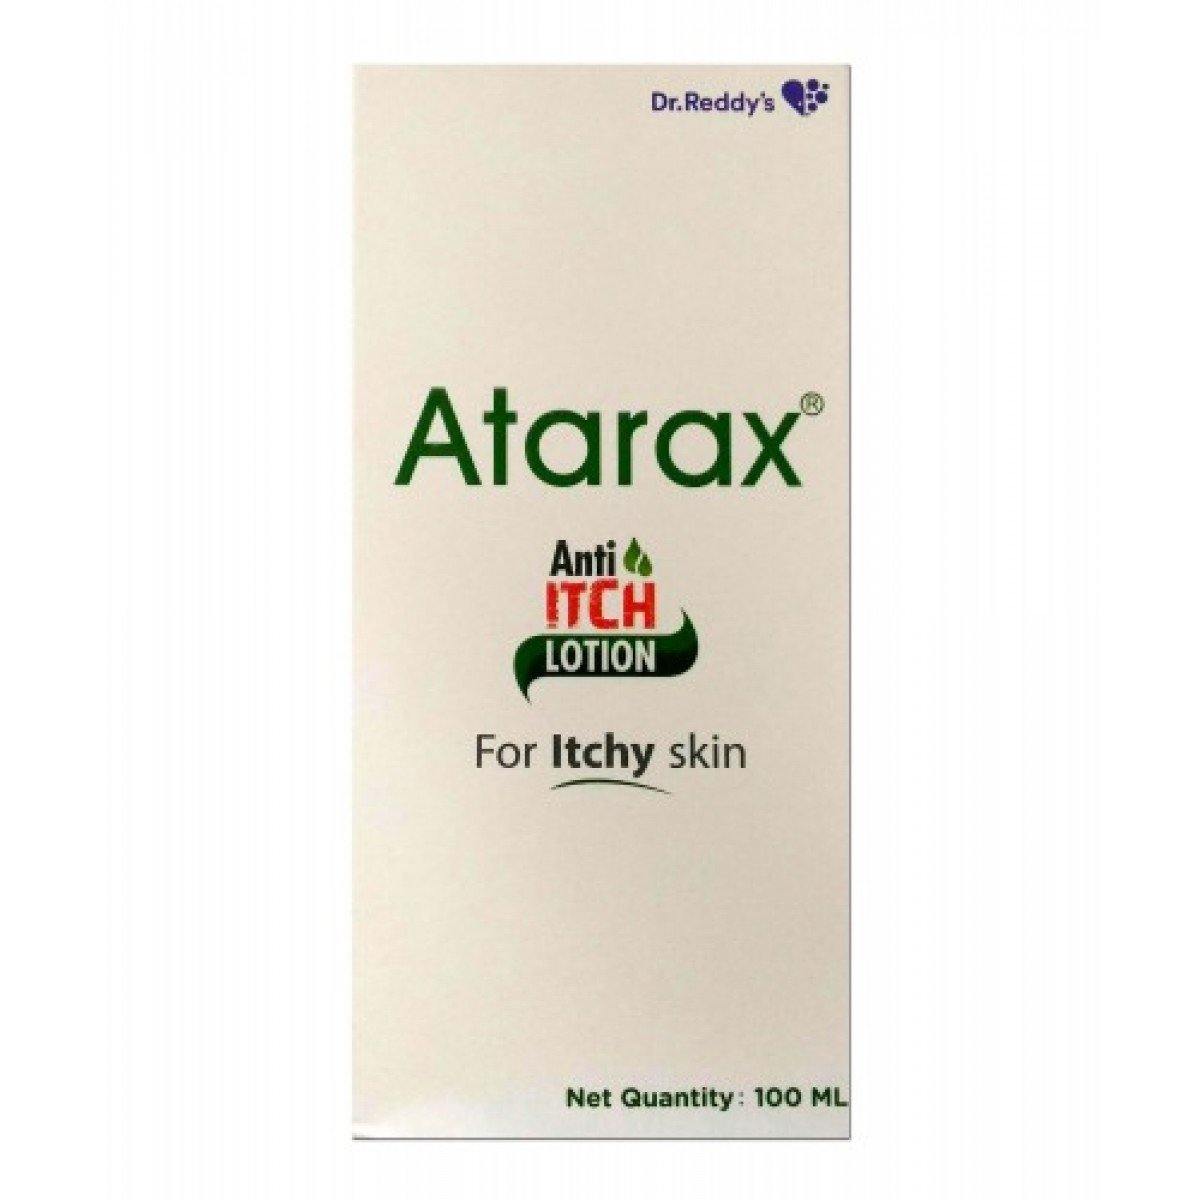 Atarax Anti-itch Lotion - MySkinCare.in